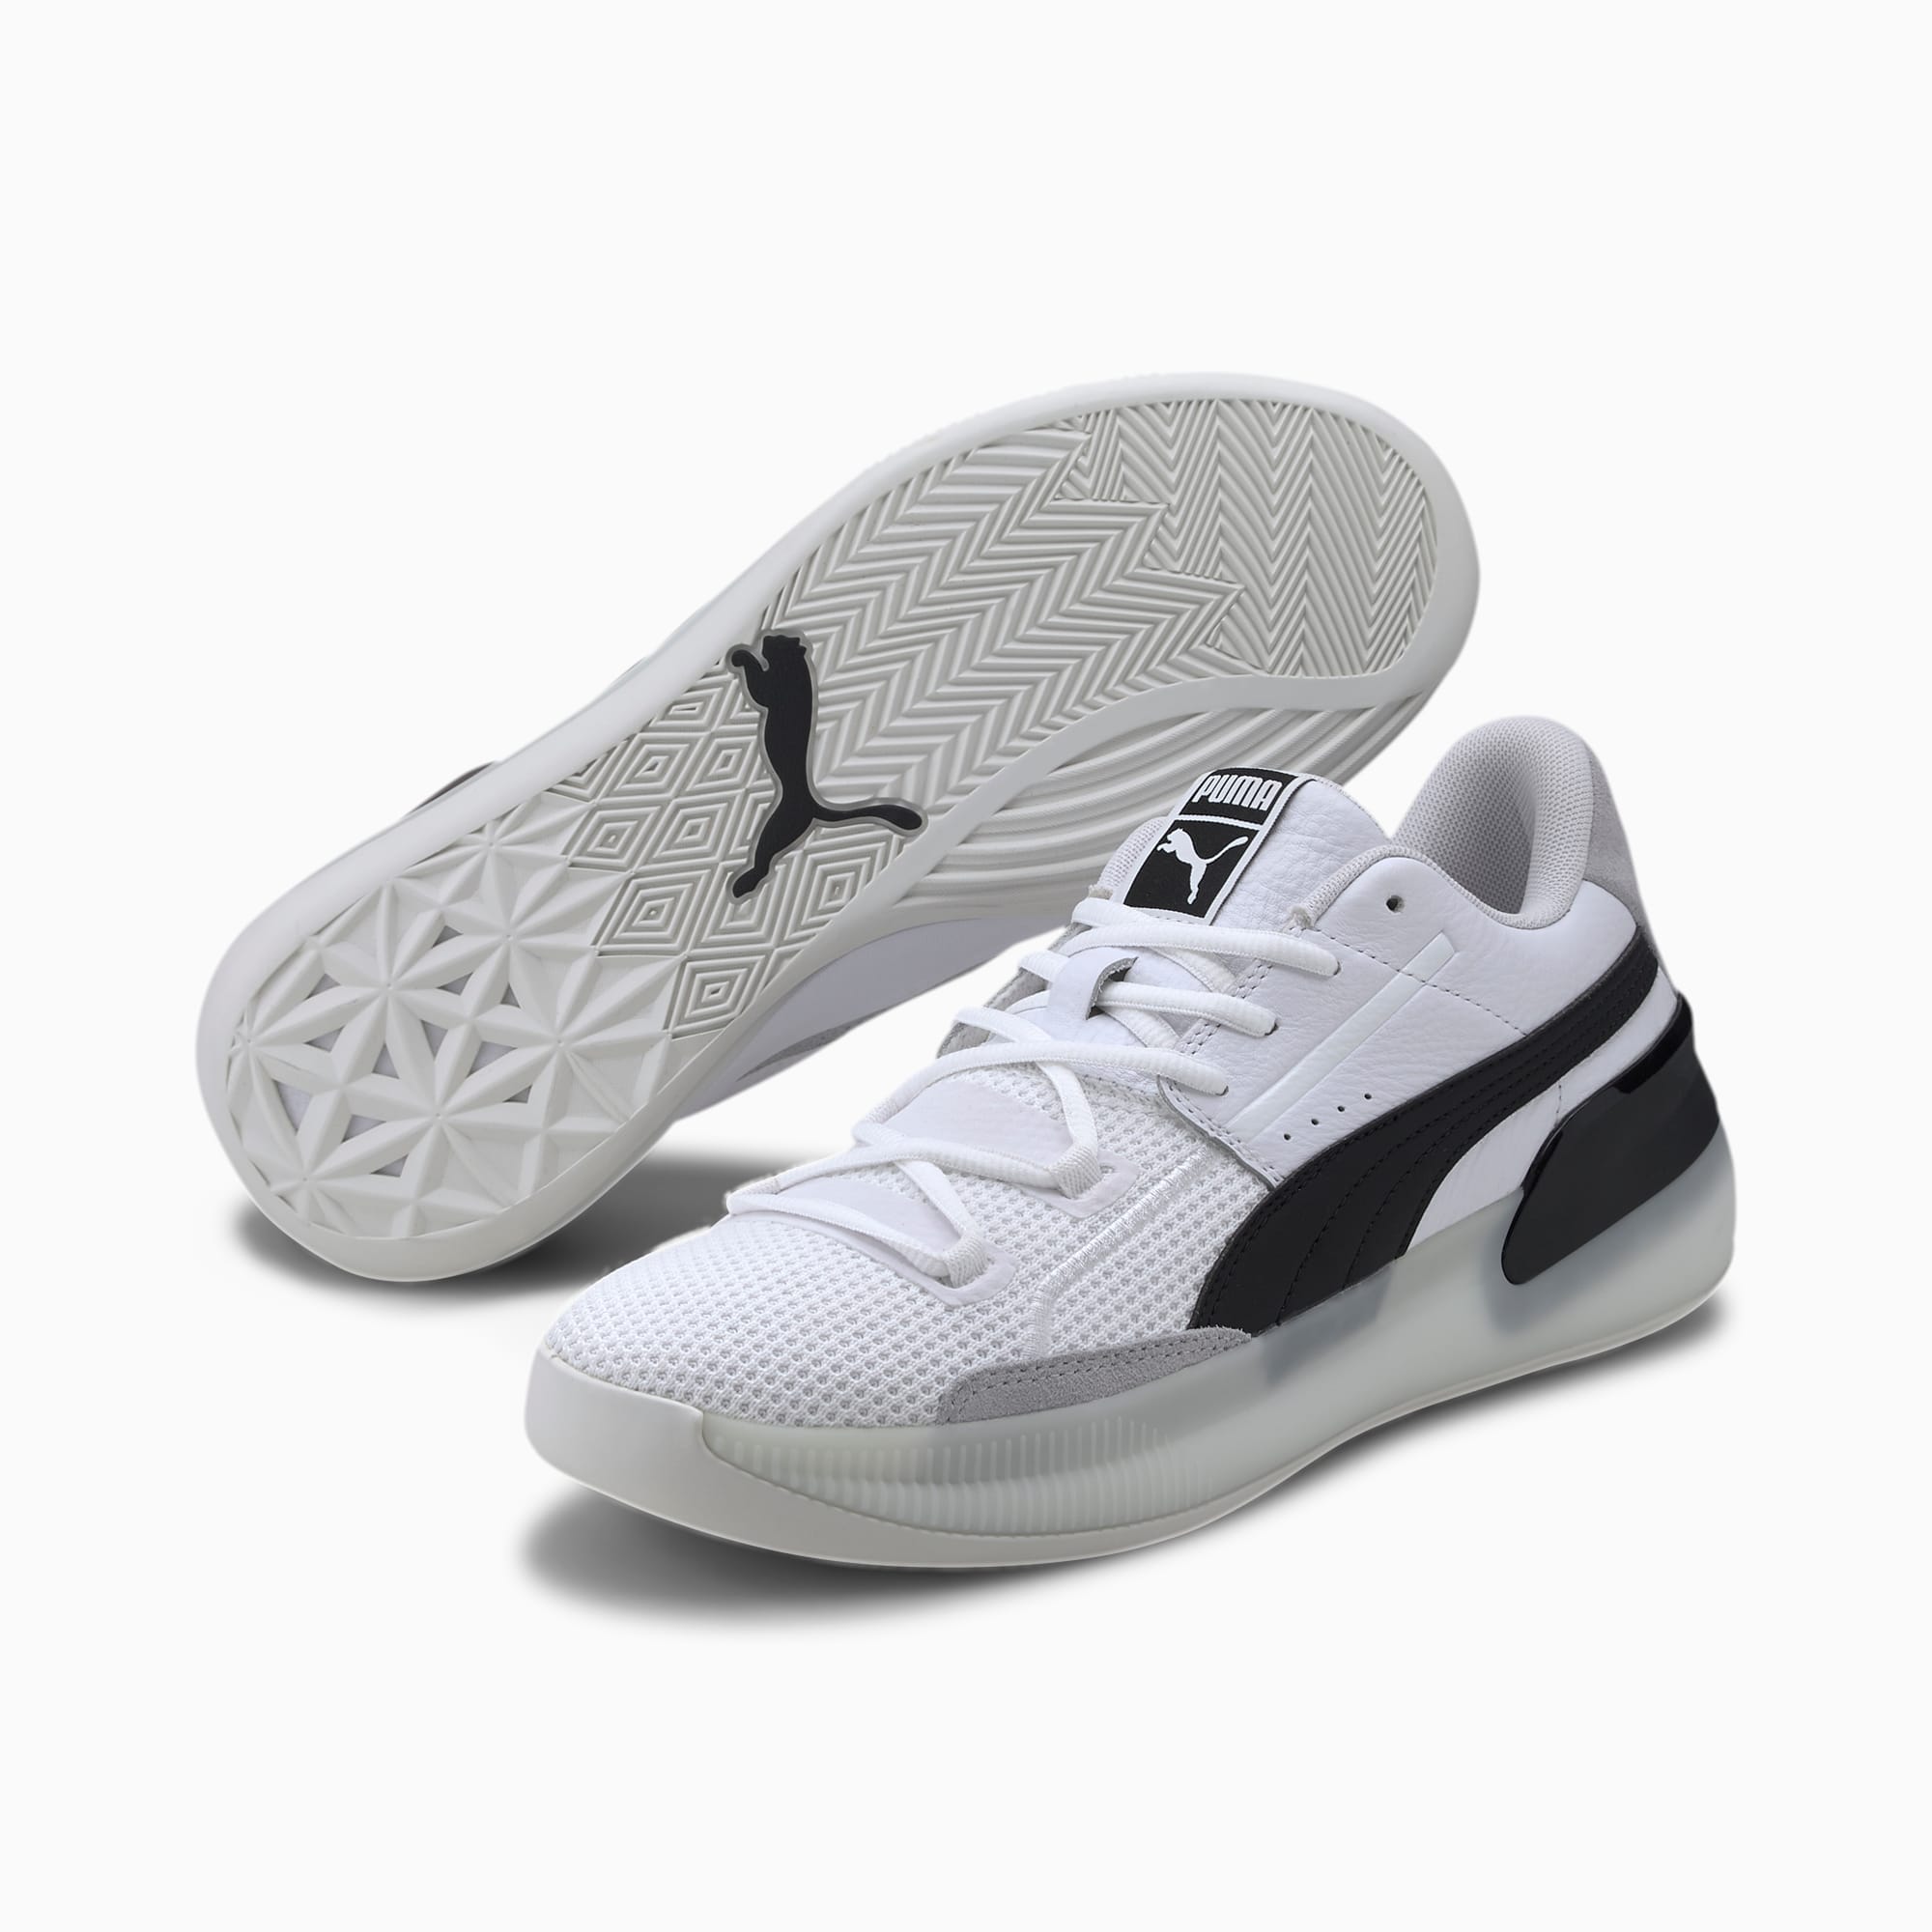 puma mens basketball shoes